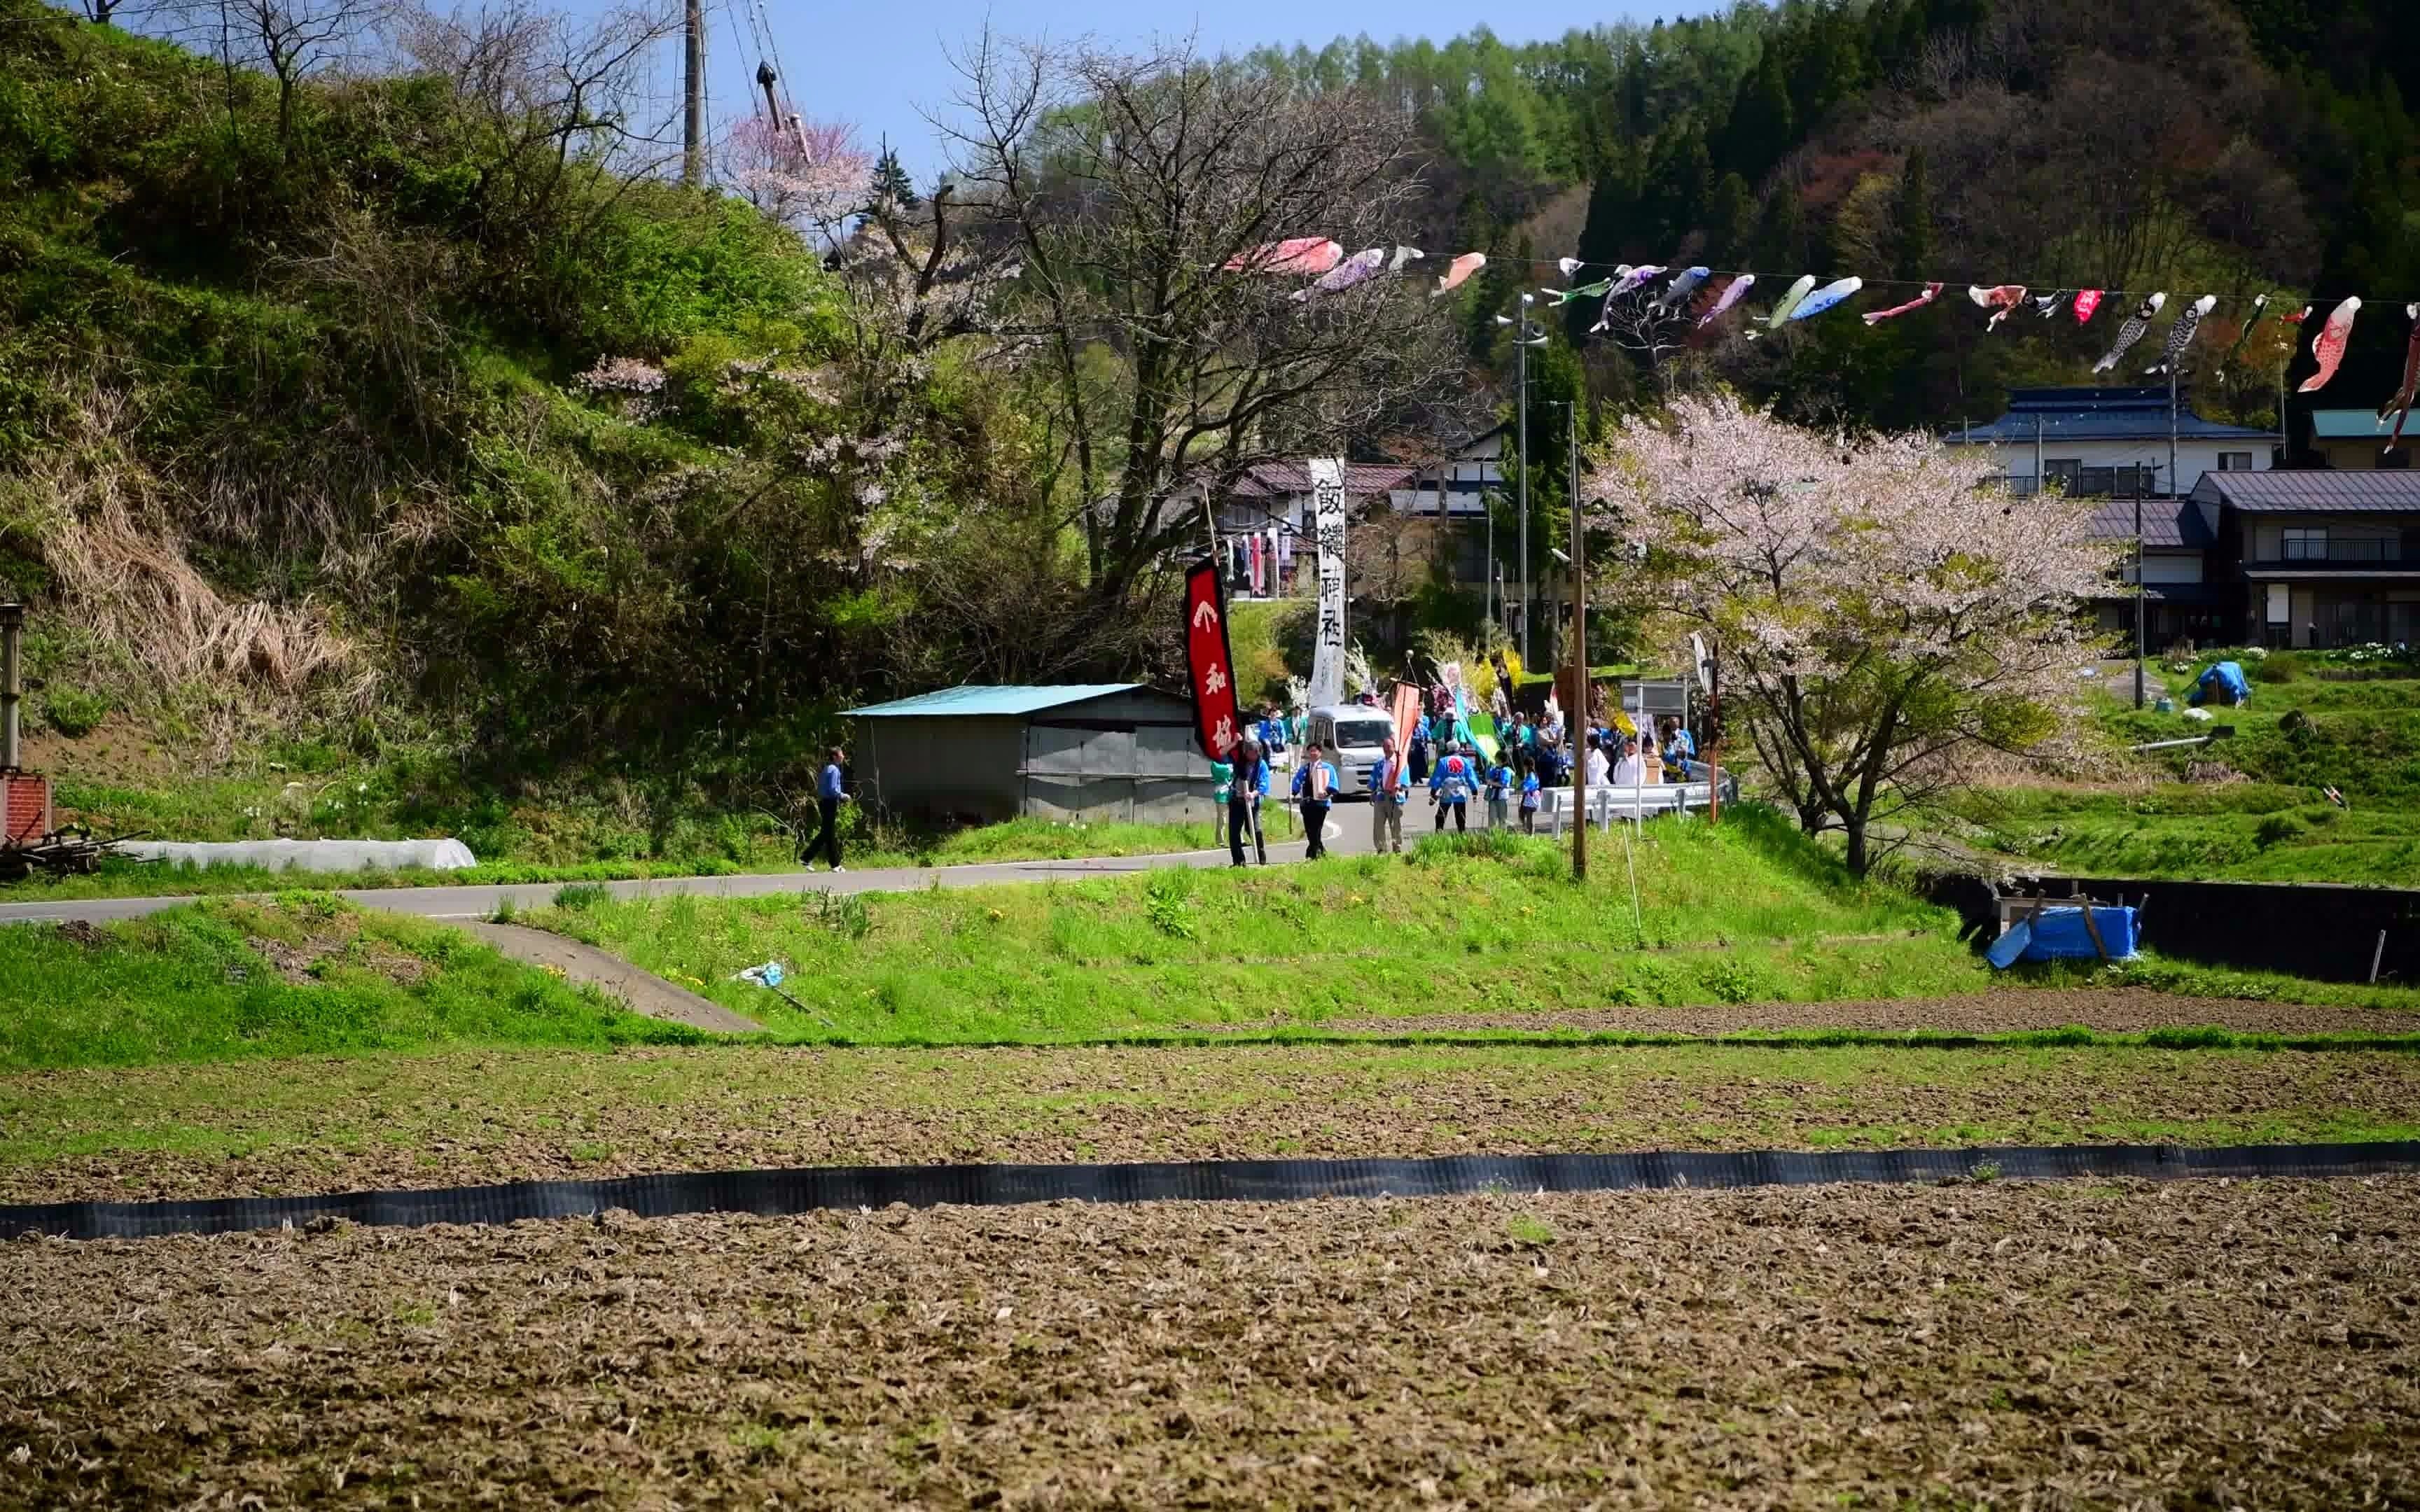 【超清日本】第一视角 新绿的里山上响起了节日的伴奏声 (4K超清版) 2021.5